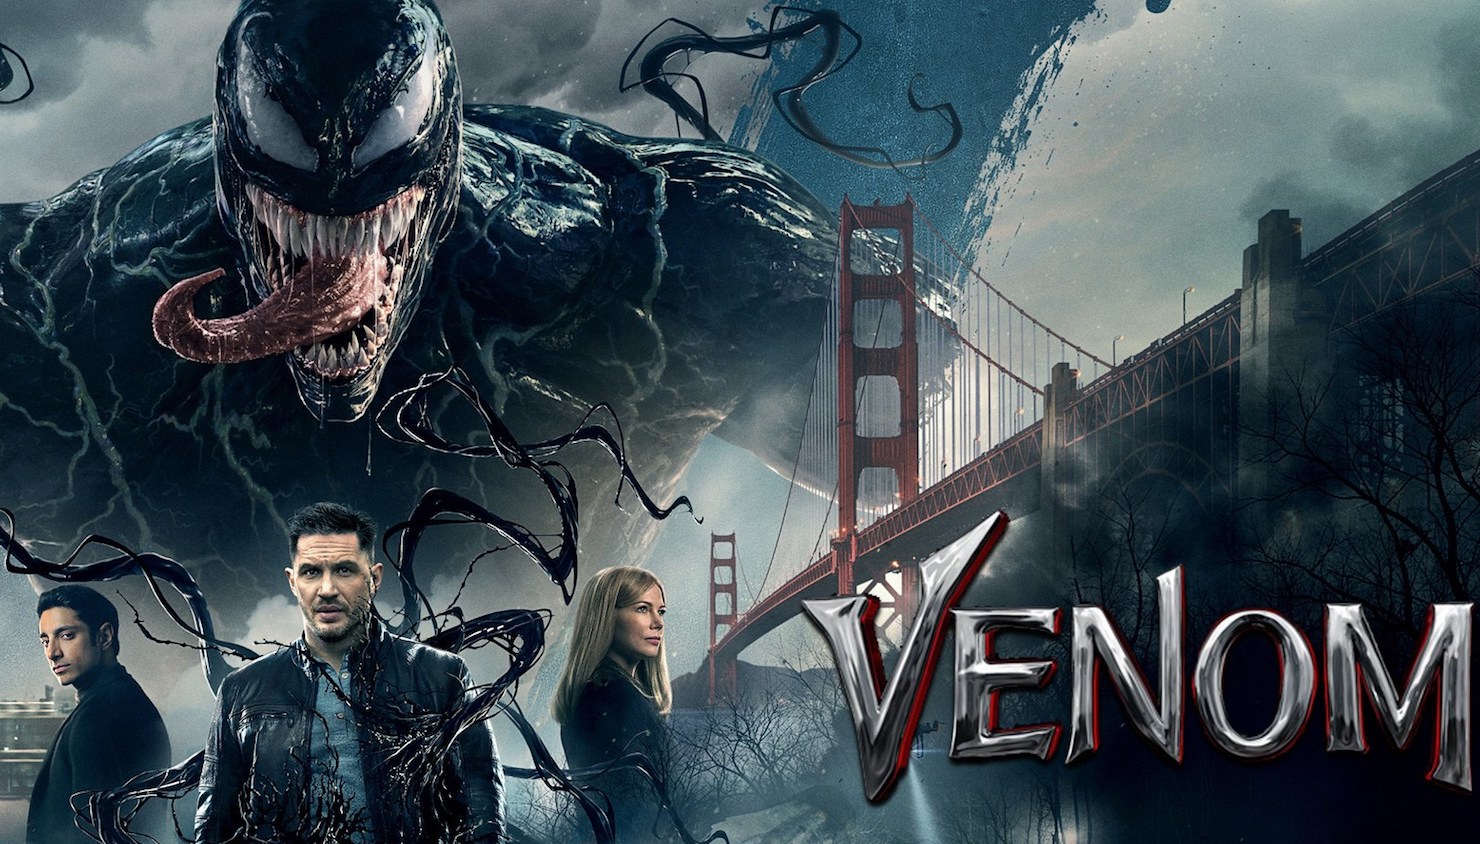 Веном 2018 в качестве. Постеры к фильму Venom.